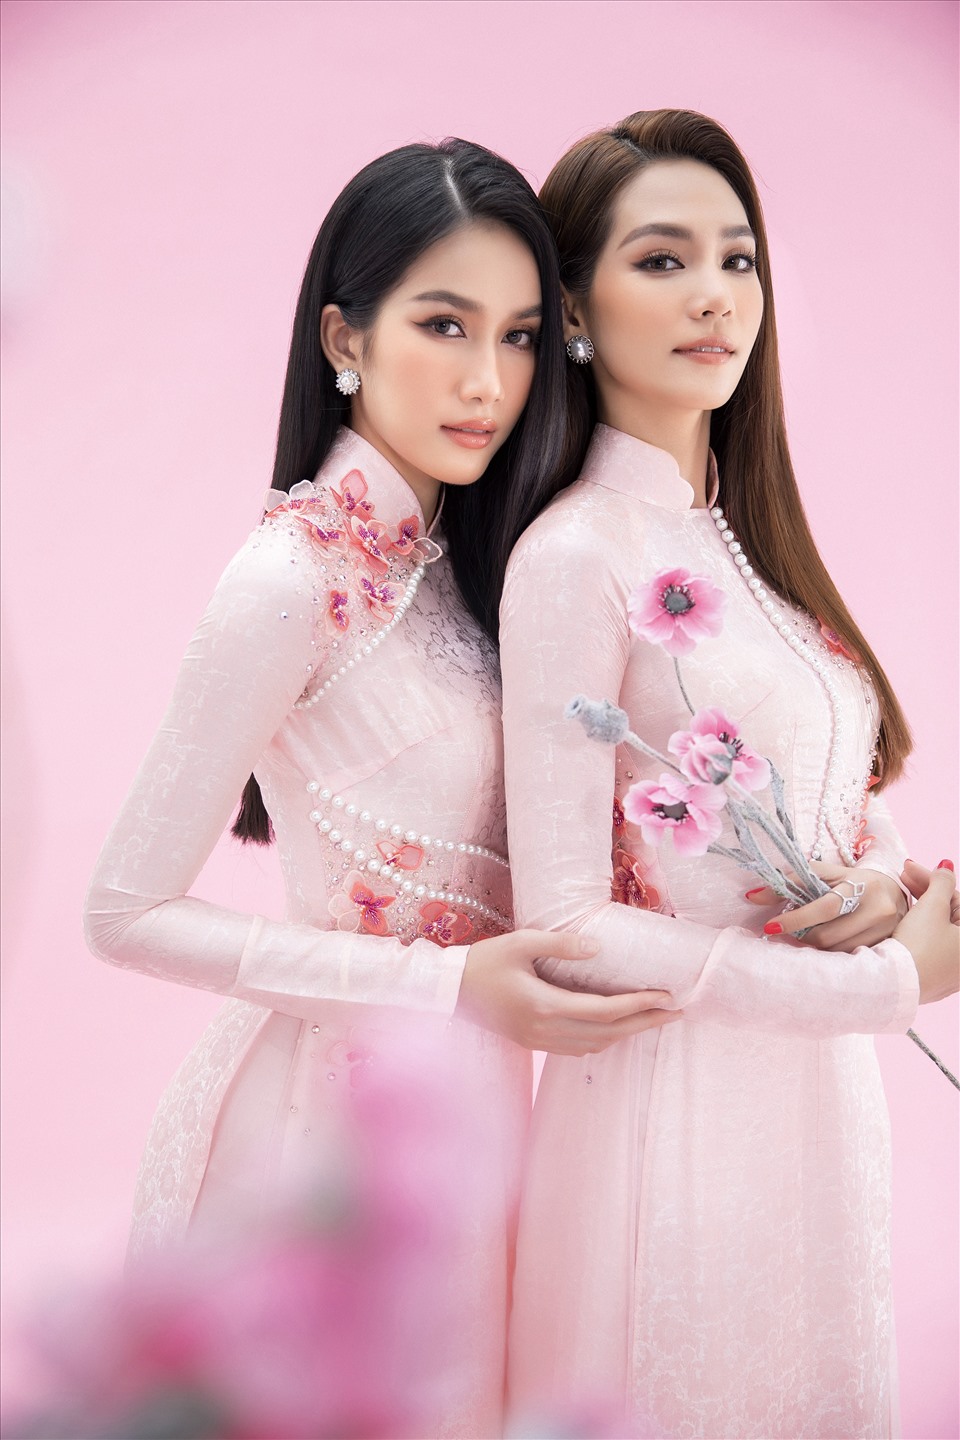 Á hậu Phương Anh cùng Miss International 2019 Sireethorn Leearamwat khoác trên mình những tà áo dài Việt Nam của nhà thiết kế Ngô Nhật Huy, vô cùng dịu dàng nhưng không kém phần quyến rũ, cả hai nàng hậu đều tôn lên được những nét đẹp truyền thống của tà áo dài nhưng chưa bao giờ cũ.